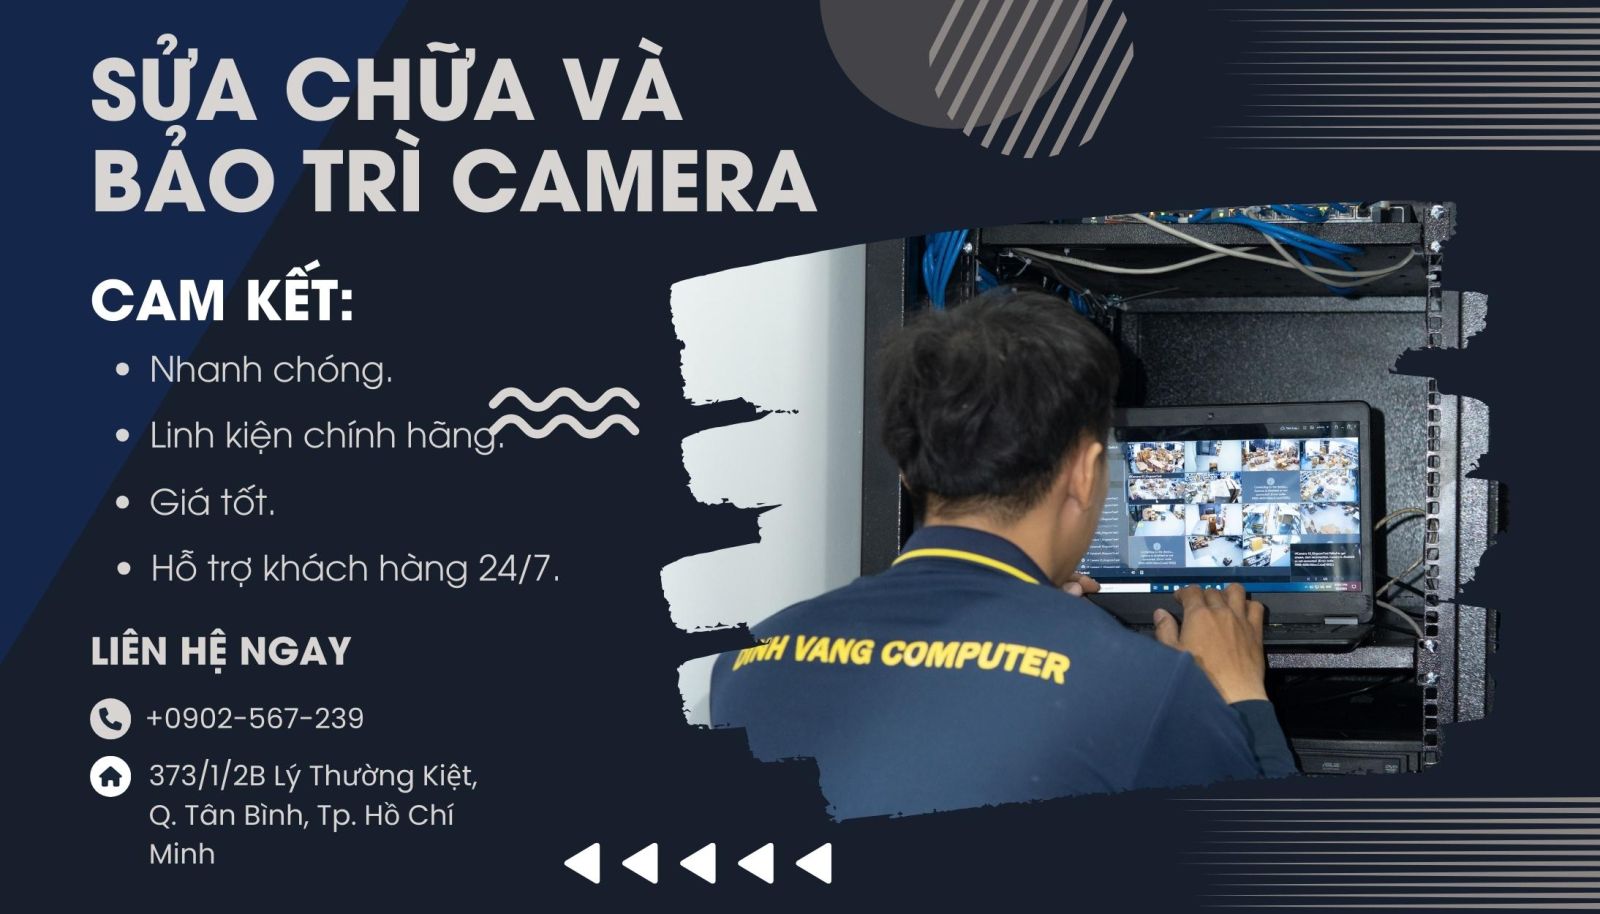 Đỉnh Vàng Computer chuyên cung cấp dịch vụ bảo trì và sửa chữa trọn bộ 8 camera tại TPHCM và Bình Dương.